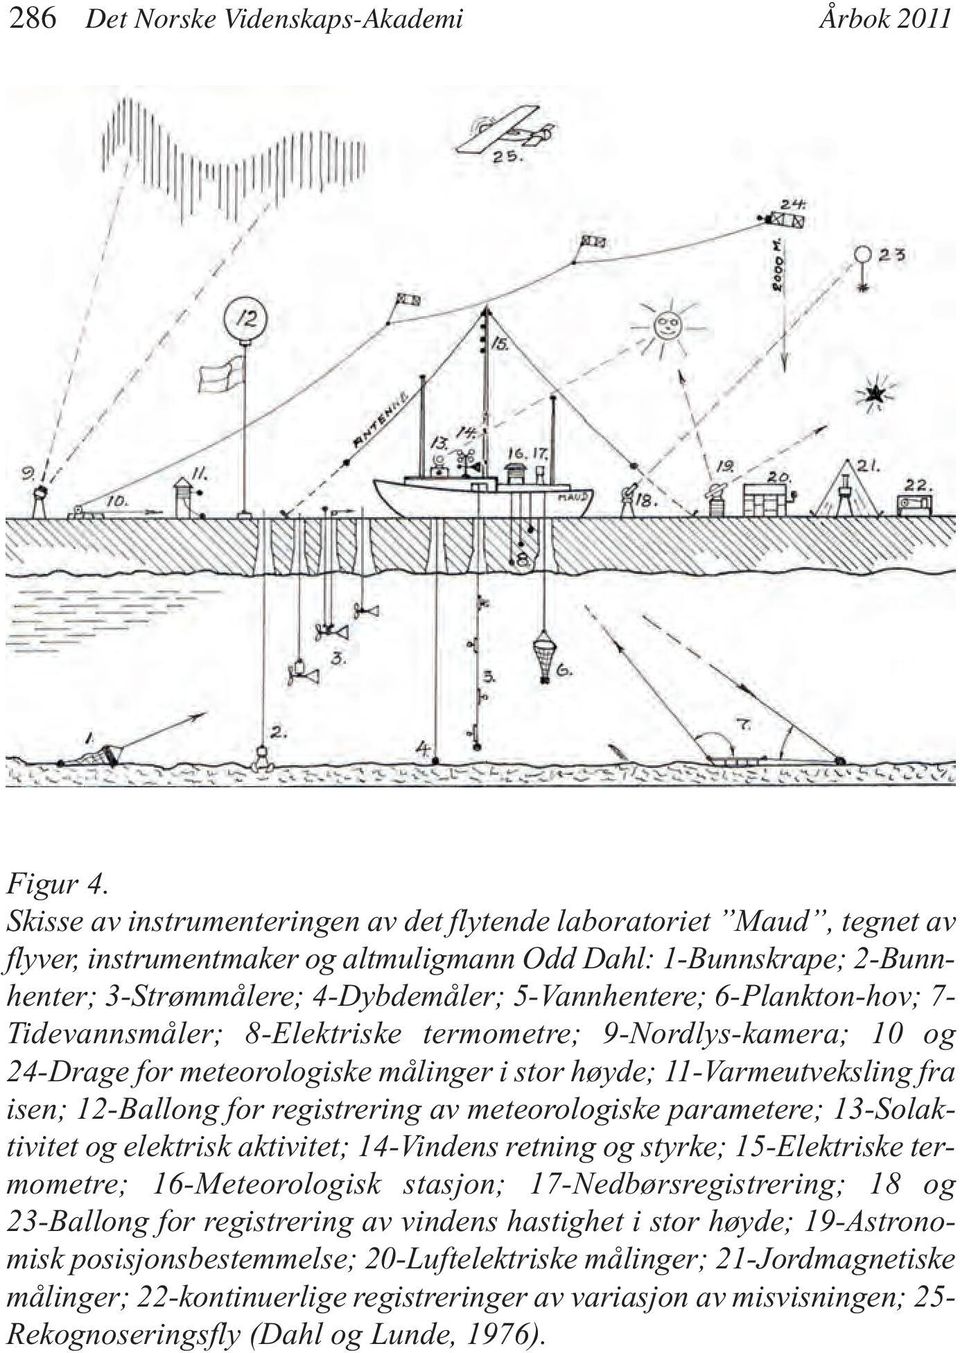 6-Plankton-hov; 7- Tidevannsmåler; 8-Elektriske termometre; 9-Nordlys-kamera; 10 og 24-Drage for meteorologiske målinger i stor høyde; 11-Varmeutveksling fra isen; 12-Ballong for registrering av